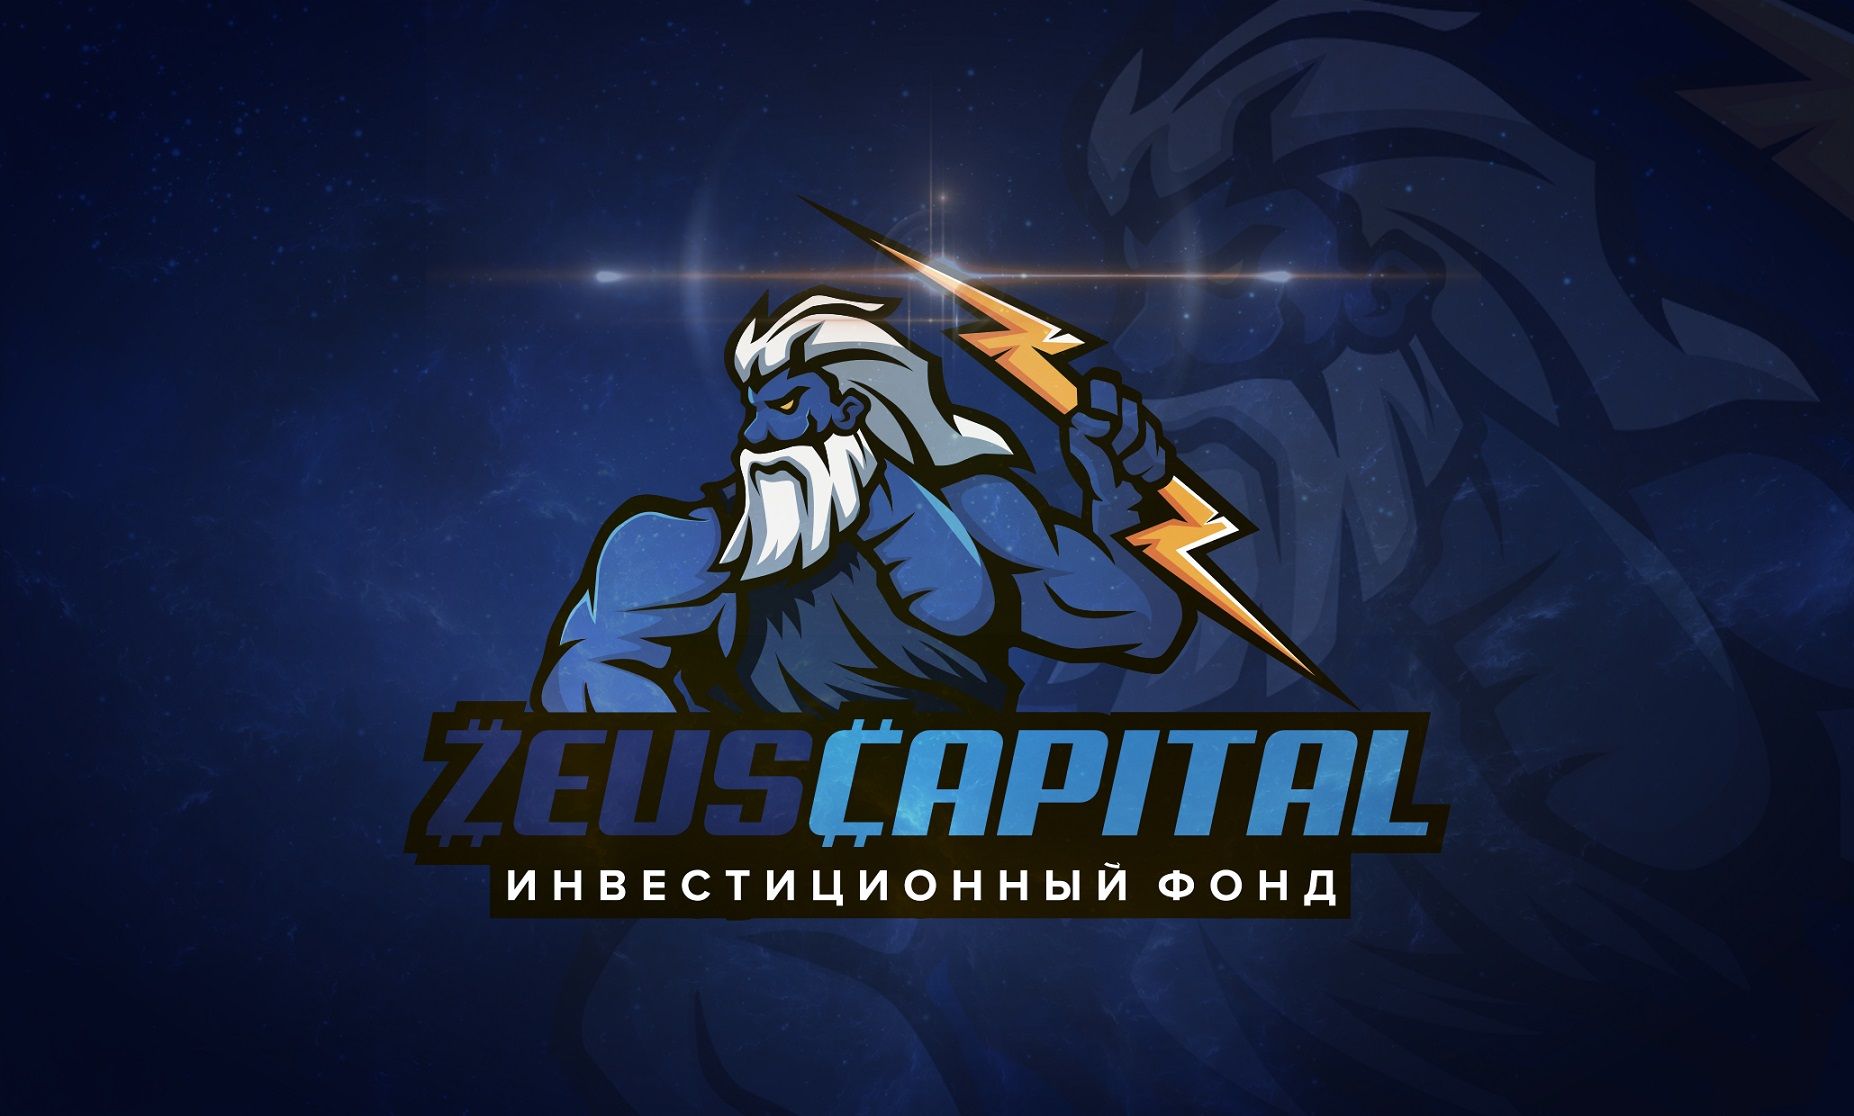 Логотип для ZEUS CAPITAL - дизайнер Bed_Banana